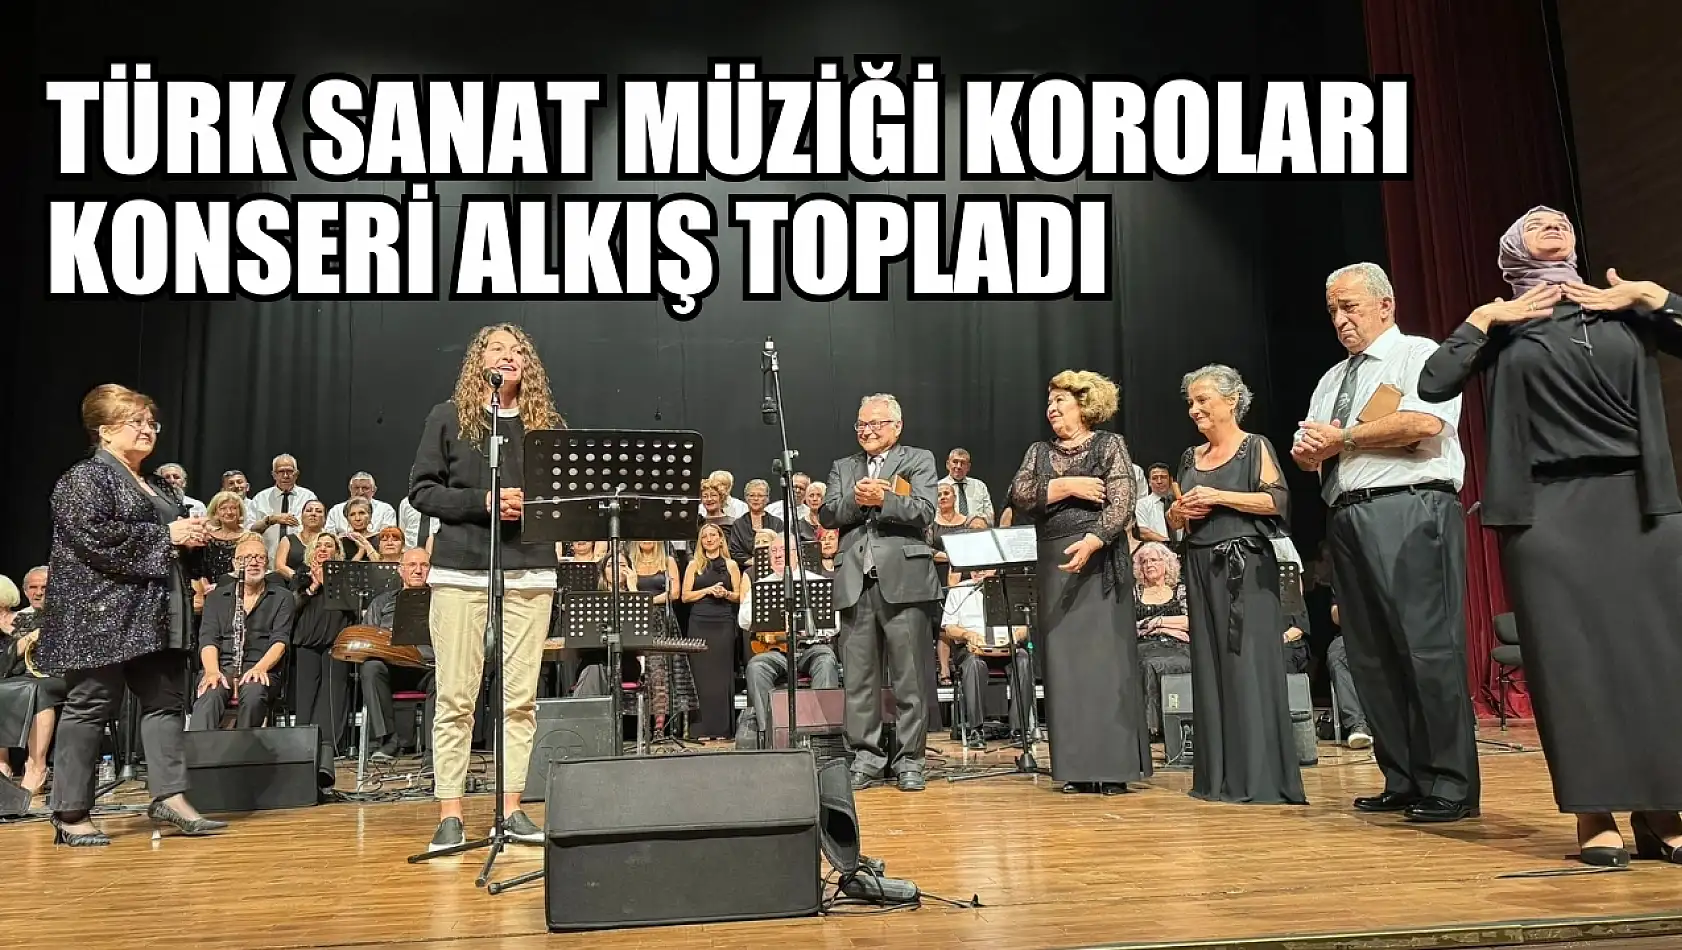 Türk Sanat Müziği Koroları konseri alkış topladı